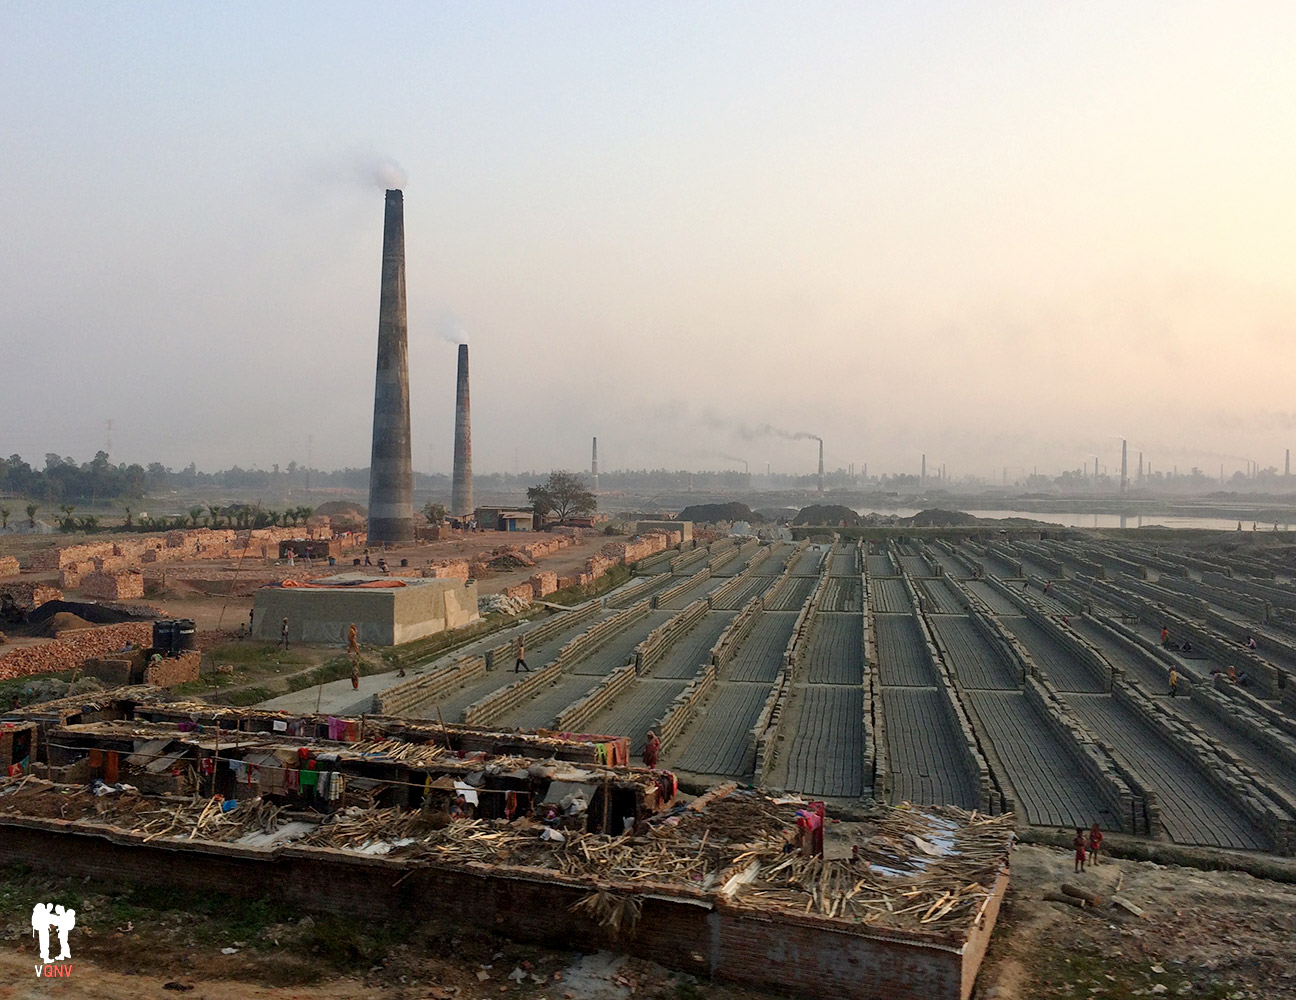 Paisajes desde un tren en Bangladesh. Vistas a fábricas de ladrillos